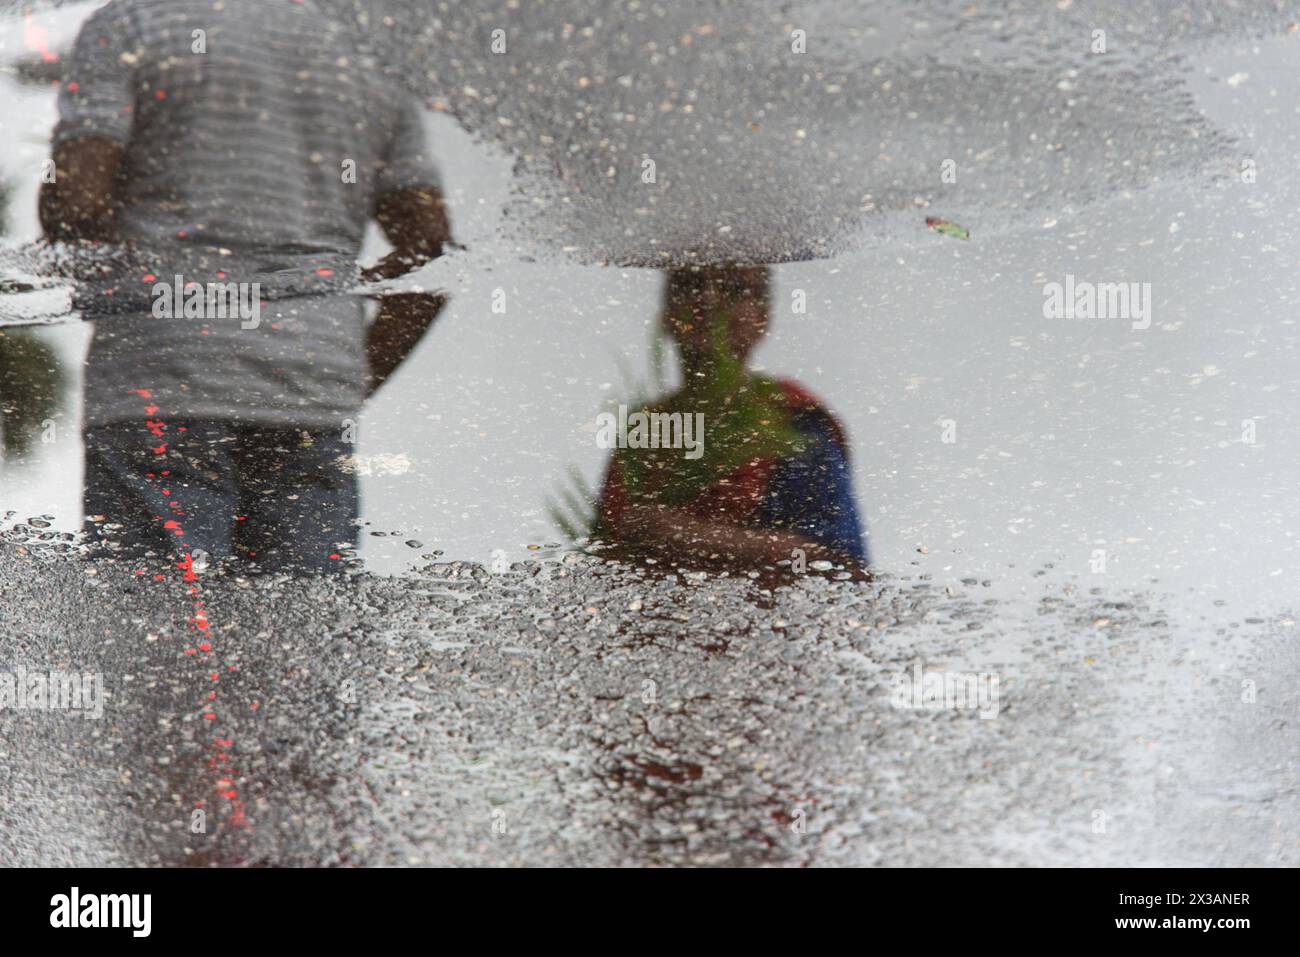 Salvador, Bahia, Brésil - 14 avril 2019 : on voit des catholiques, en réflexion sur le sol humide, tenir des plantes pendant la célébration du dimanche des Rameaux en th Banque D'Images